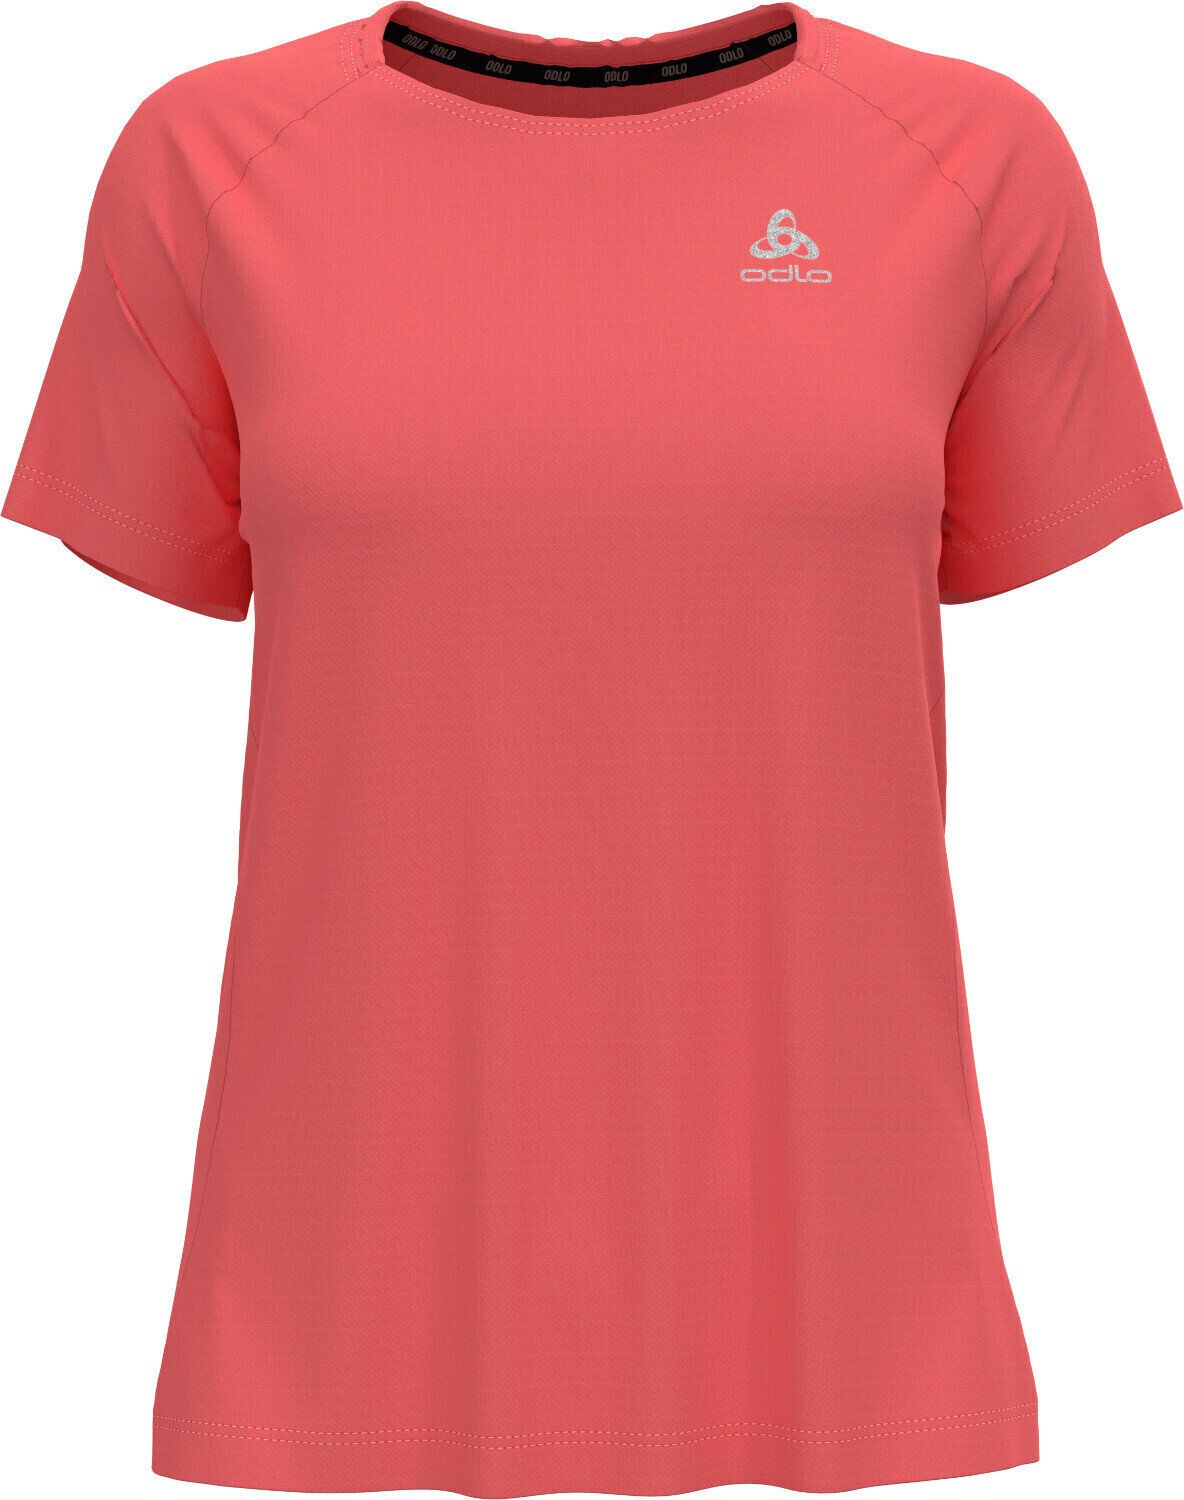 Rövidujjú futópólók
 Odlo Essential T-Shirt Siesta XS Rövidujjú futópólók